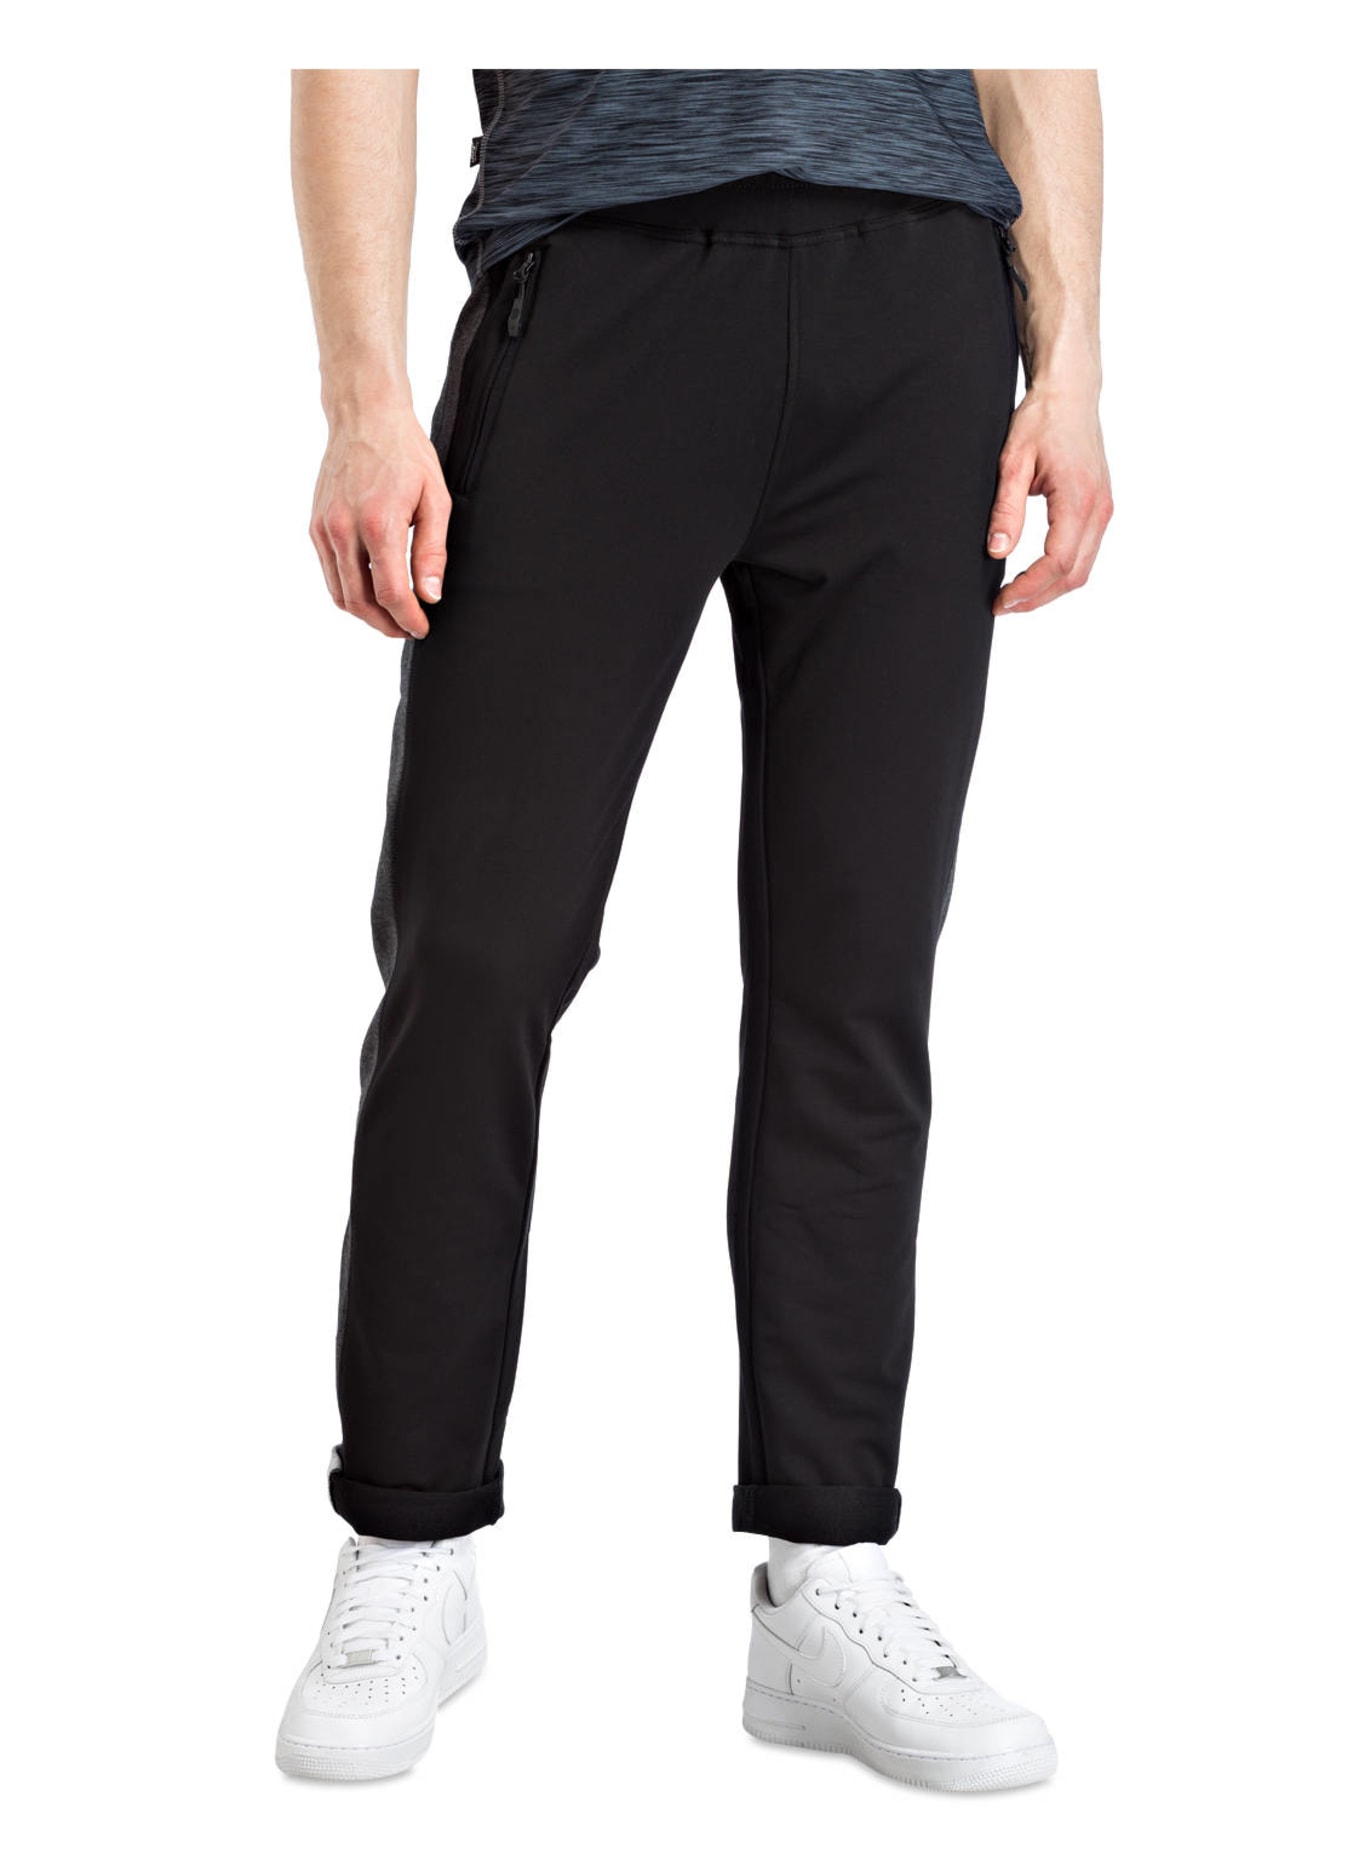 JOY sportswear Sweatpants FERNANDO, Farbe: SCHWARZ (Bild 2)